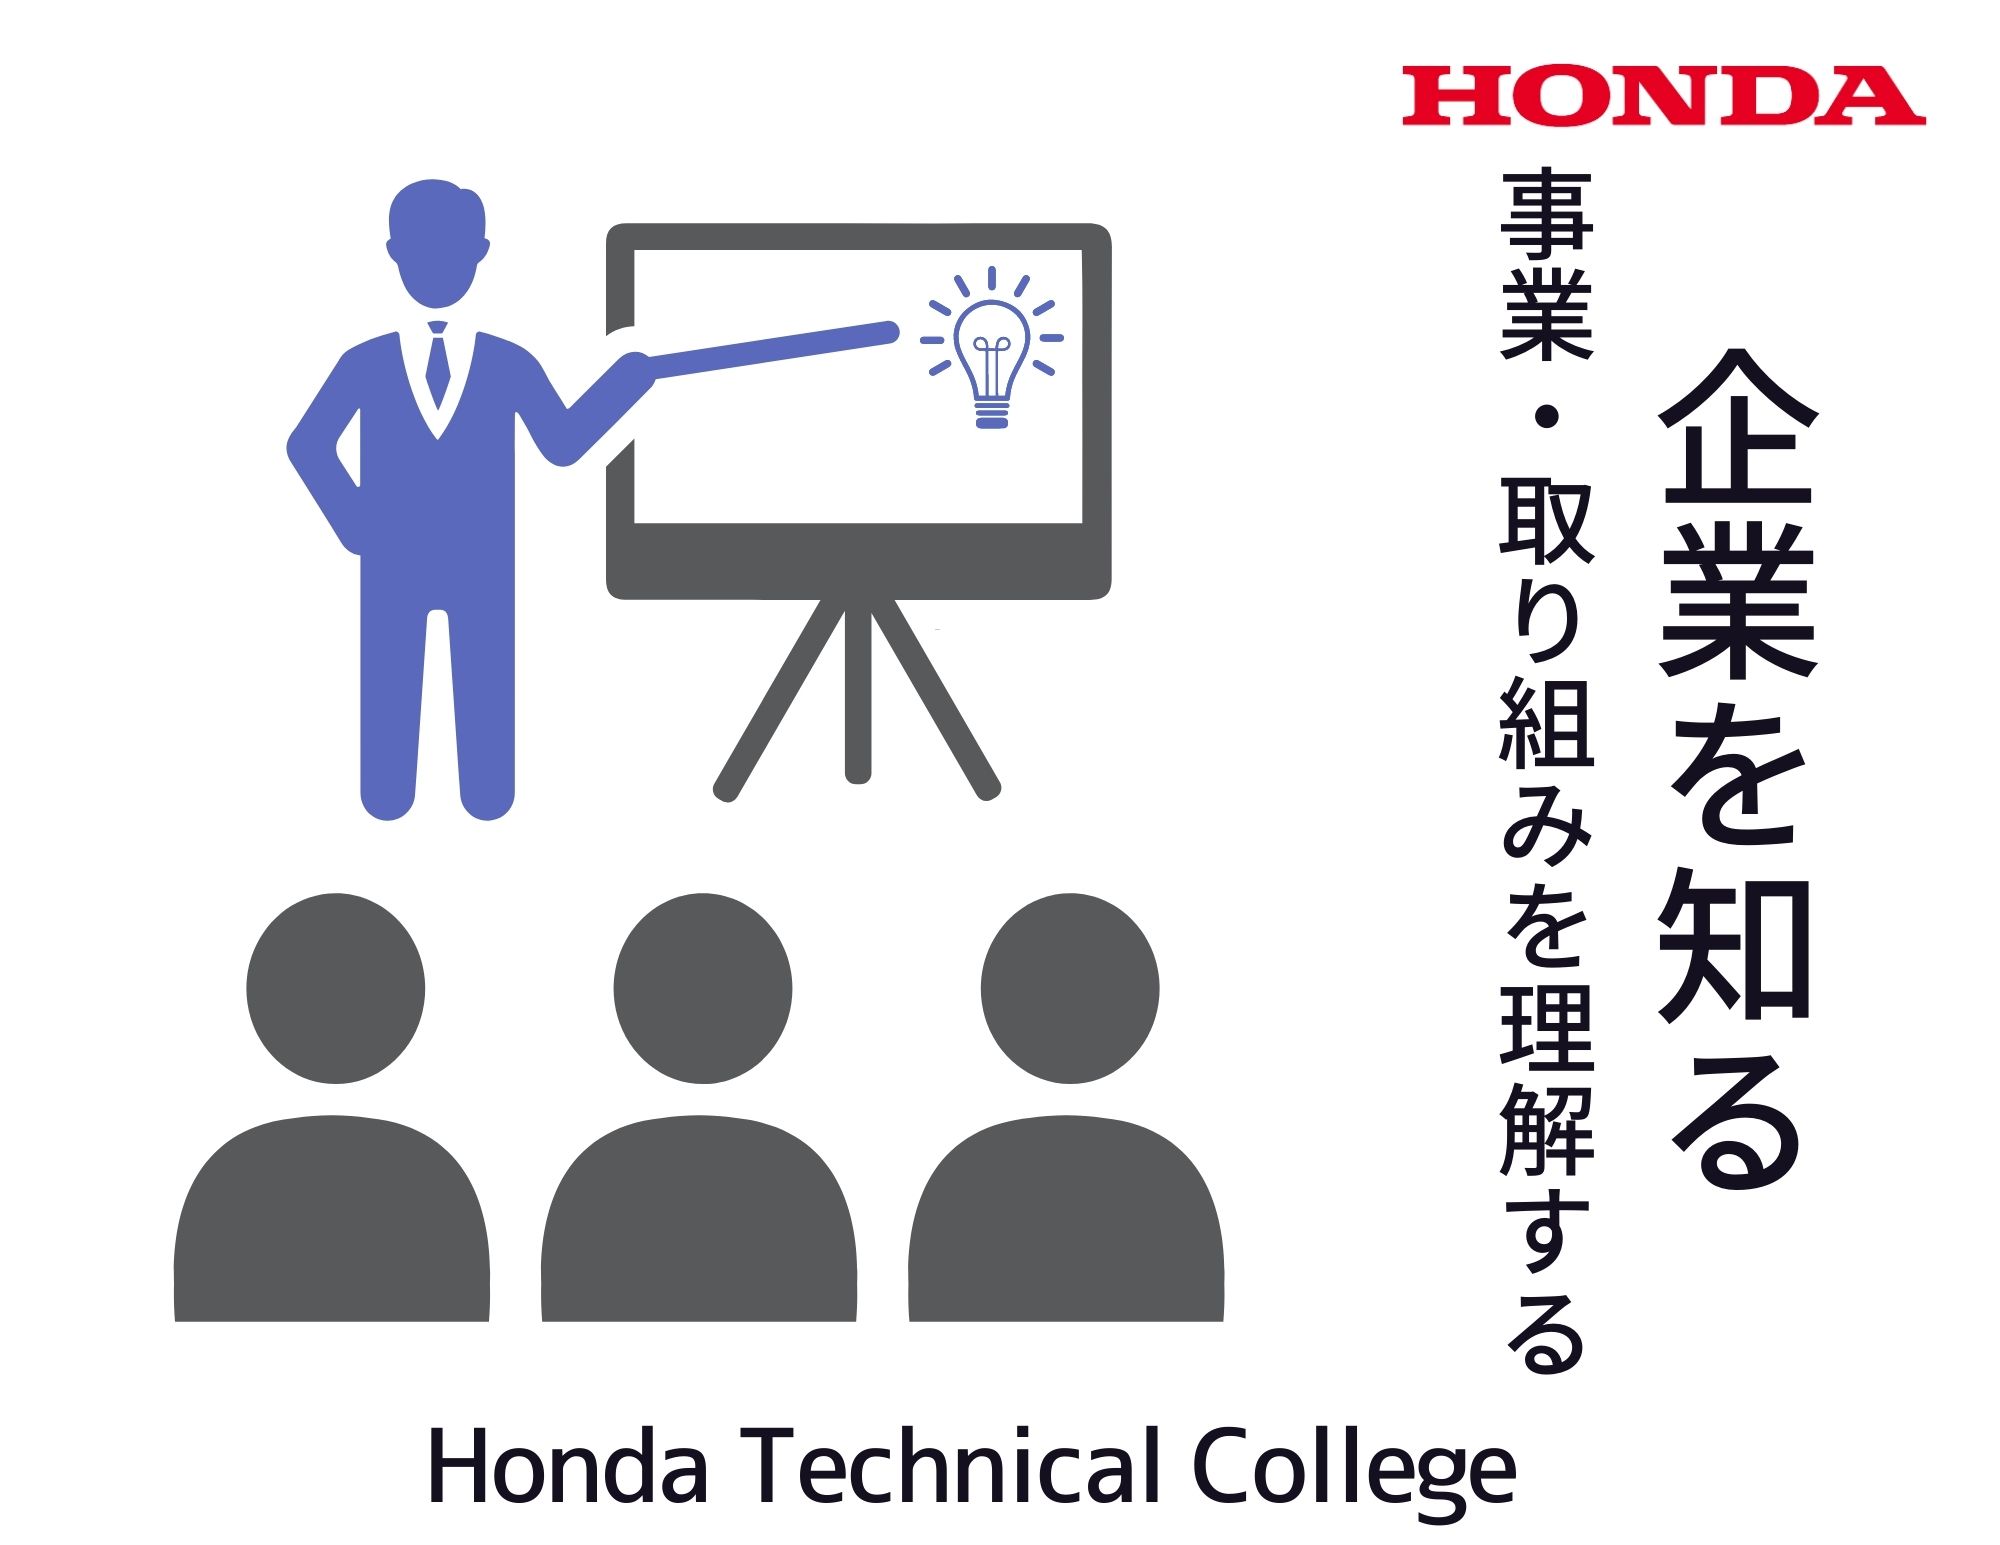 【講話】Honda純正用品「ホンダアクセス」の取り組み